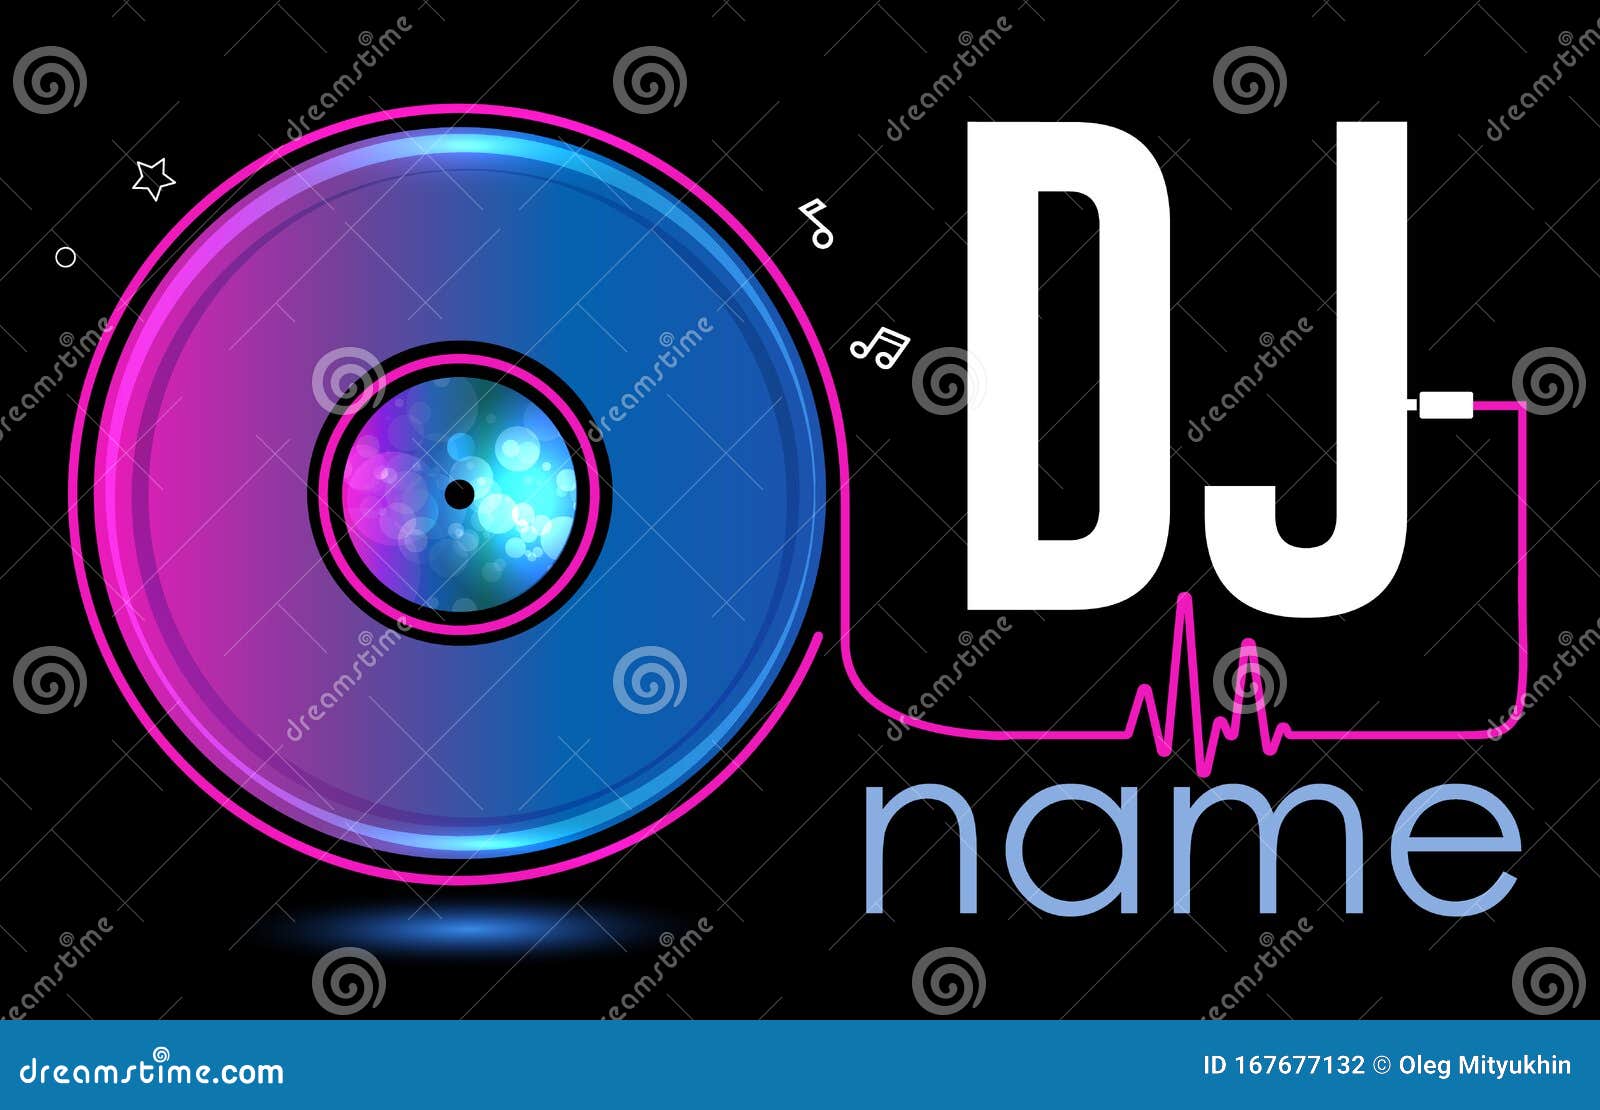 Dj Logo Design. Creative Vector Logo Design with Vinyl Record ...